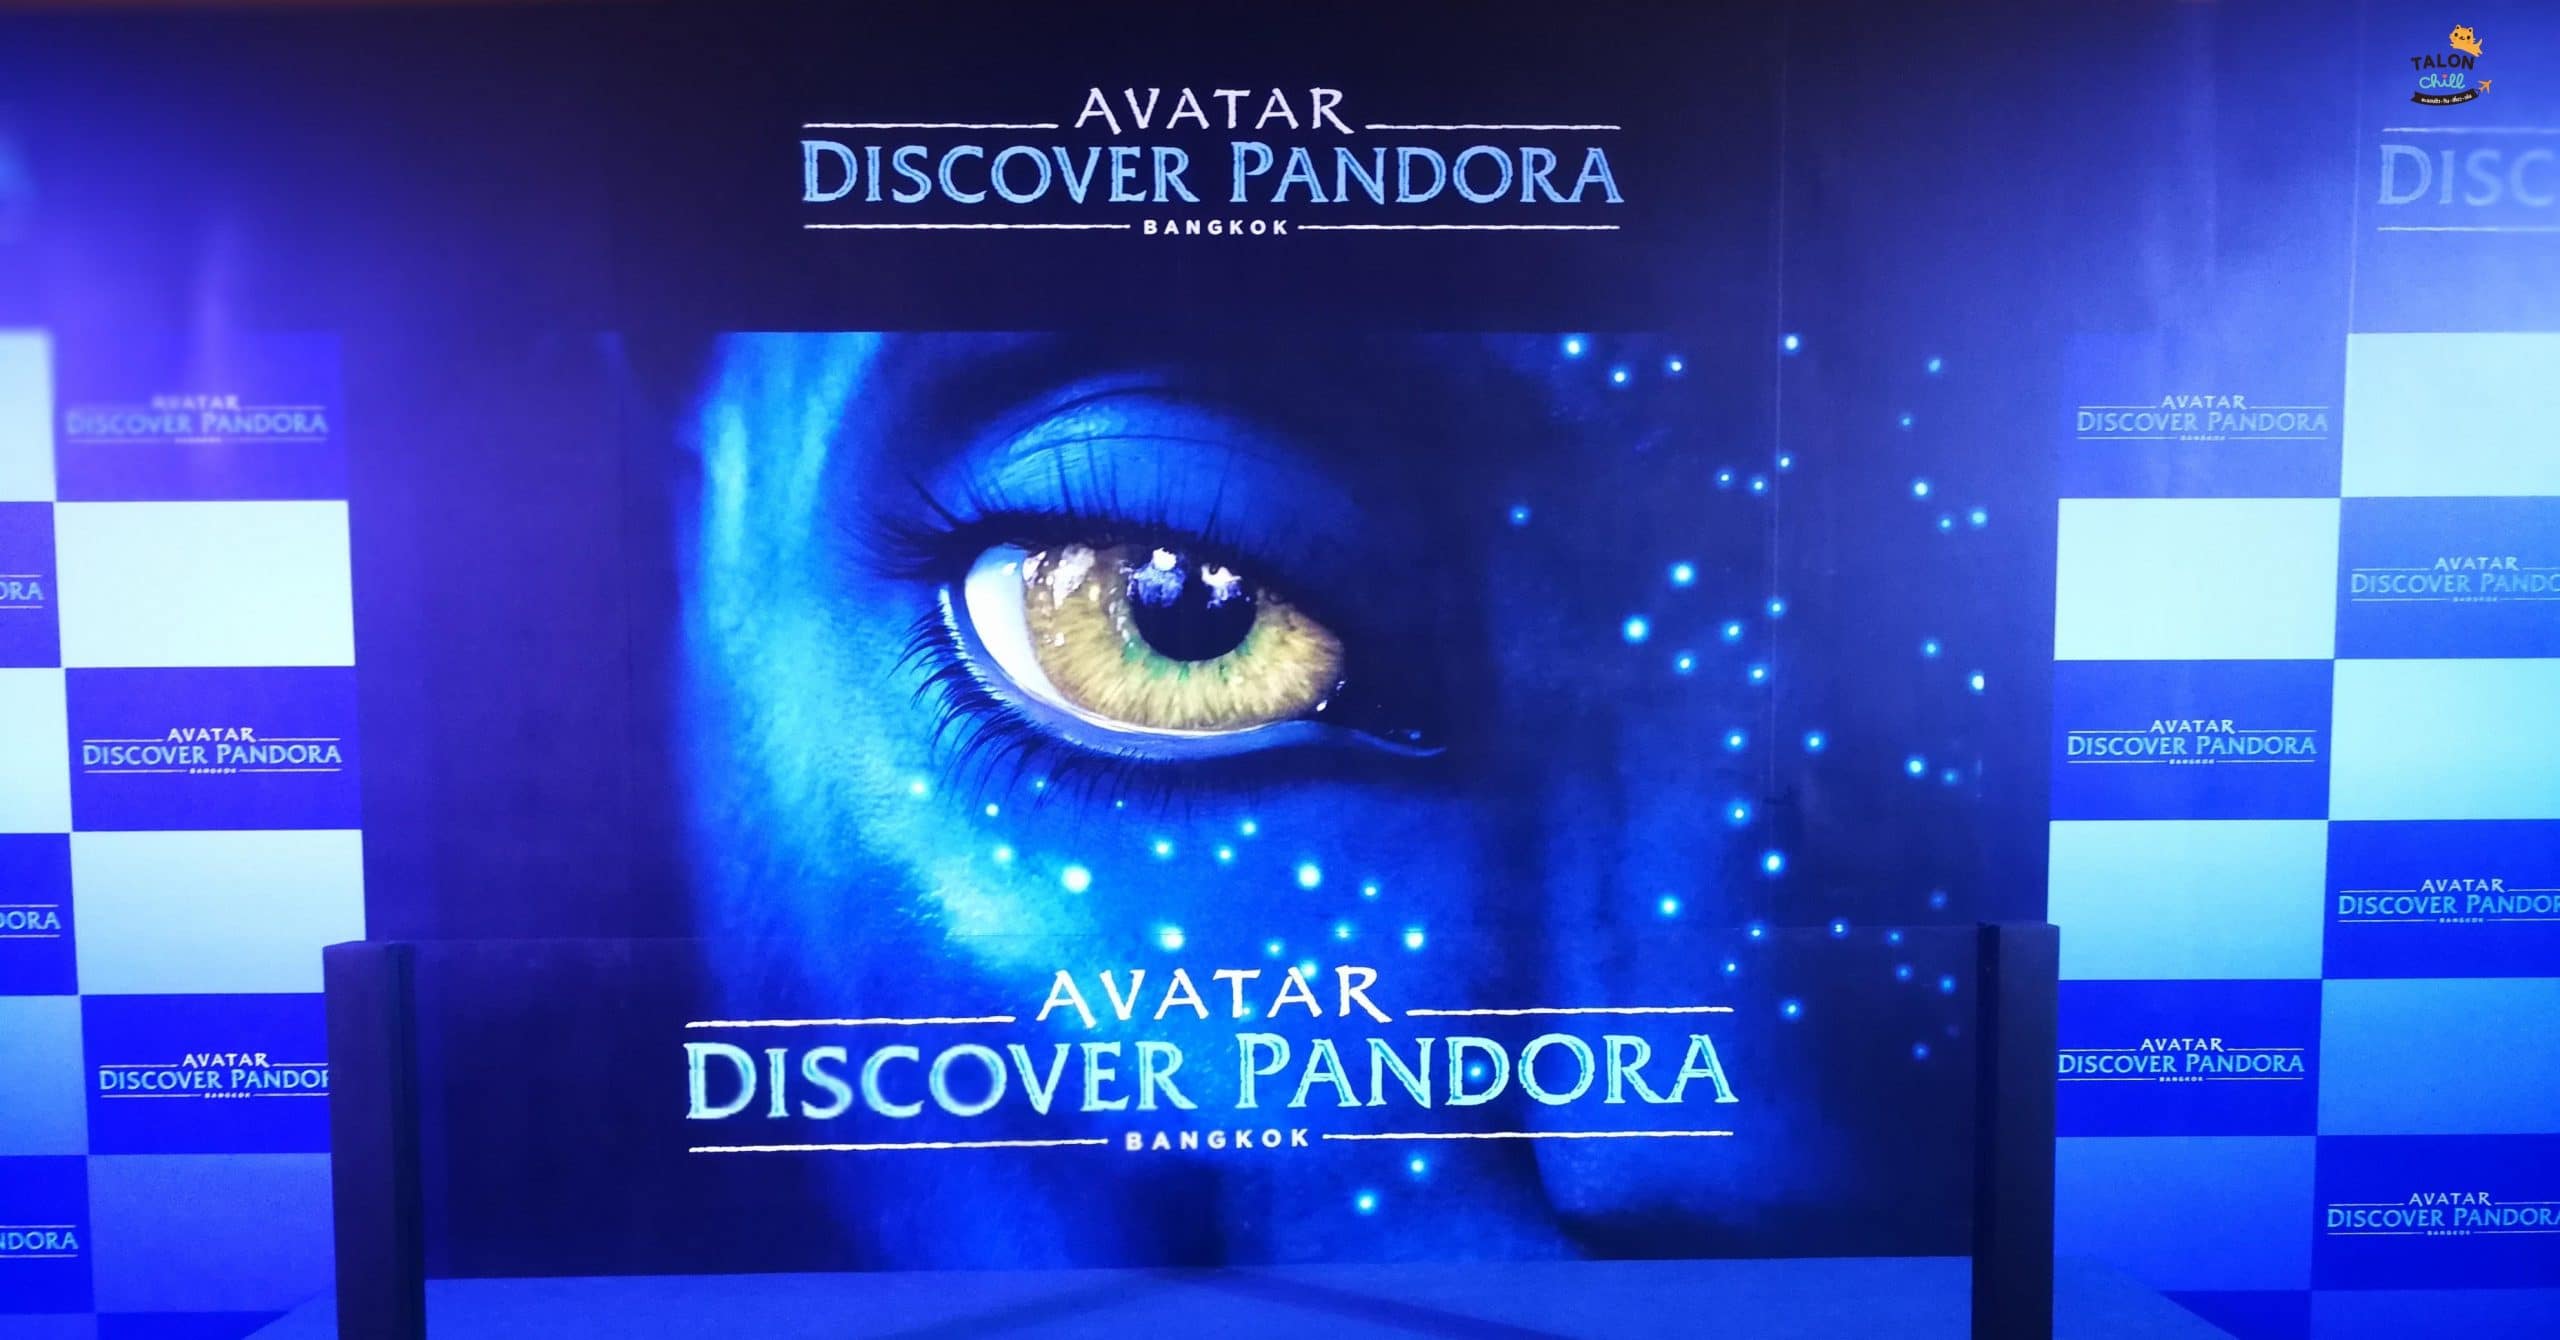 [ตะลอนเที่ยว] พาทัวร์ดาวแพนดอร่า กับ AVATAR : Discover Pandora - Bangkok [ภาพเยอะ]